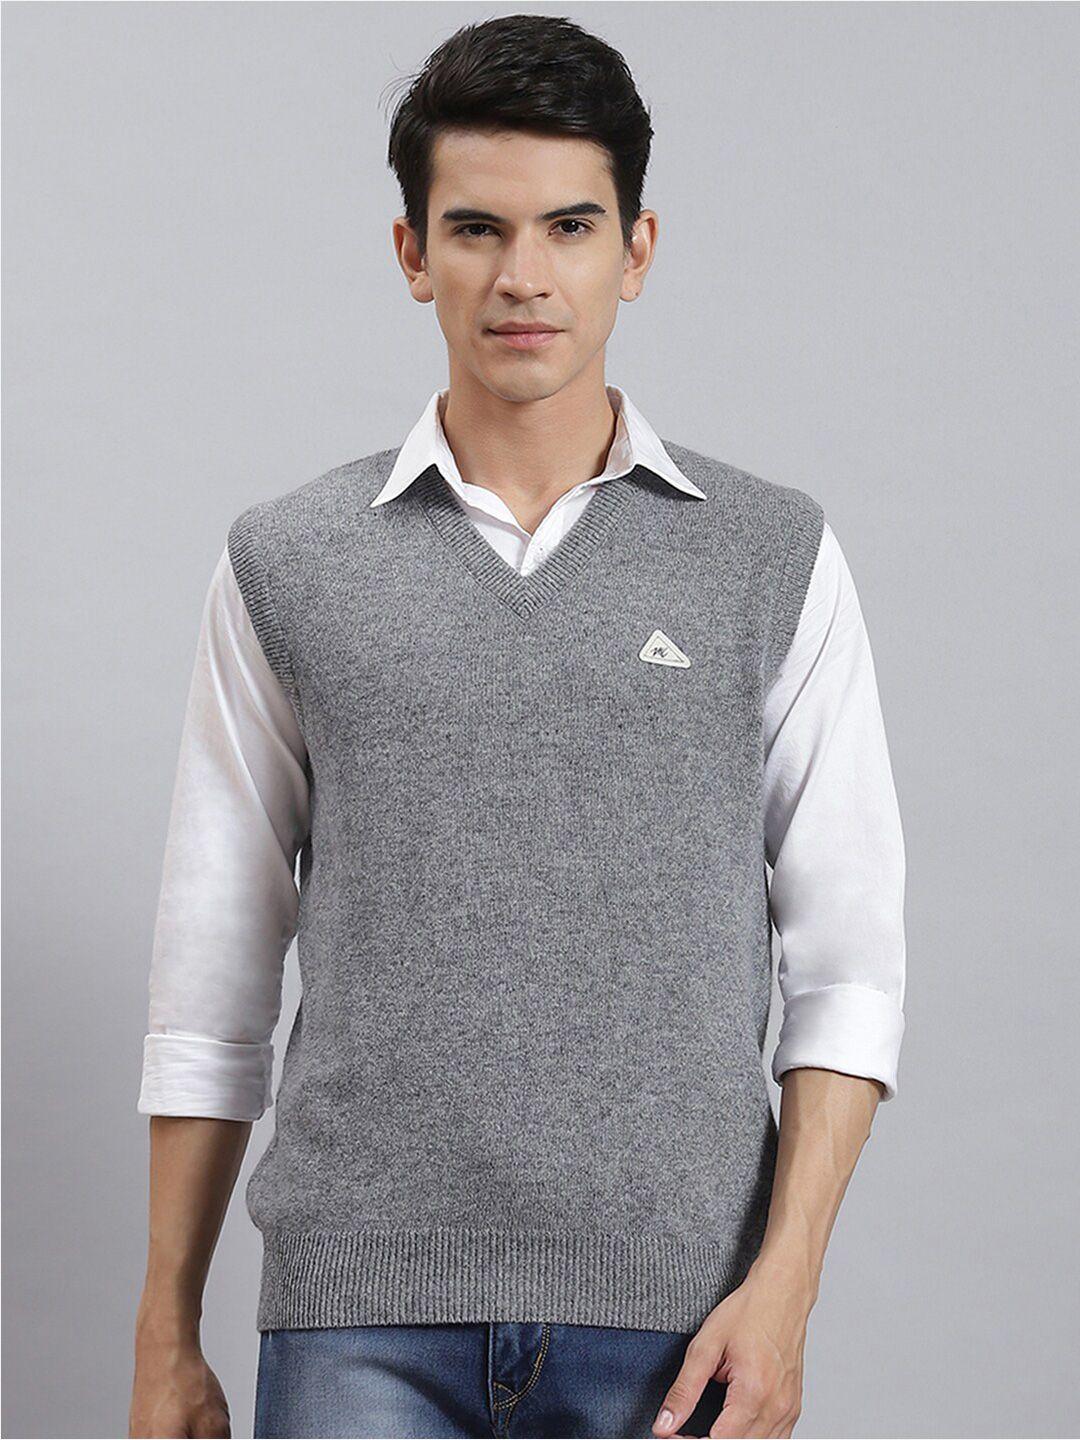 monte carlo v-neck woollen sweater vest